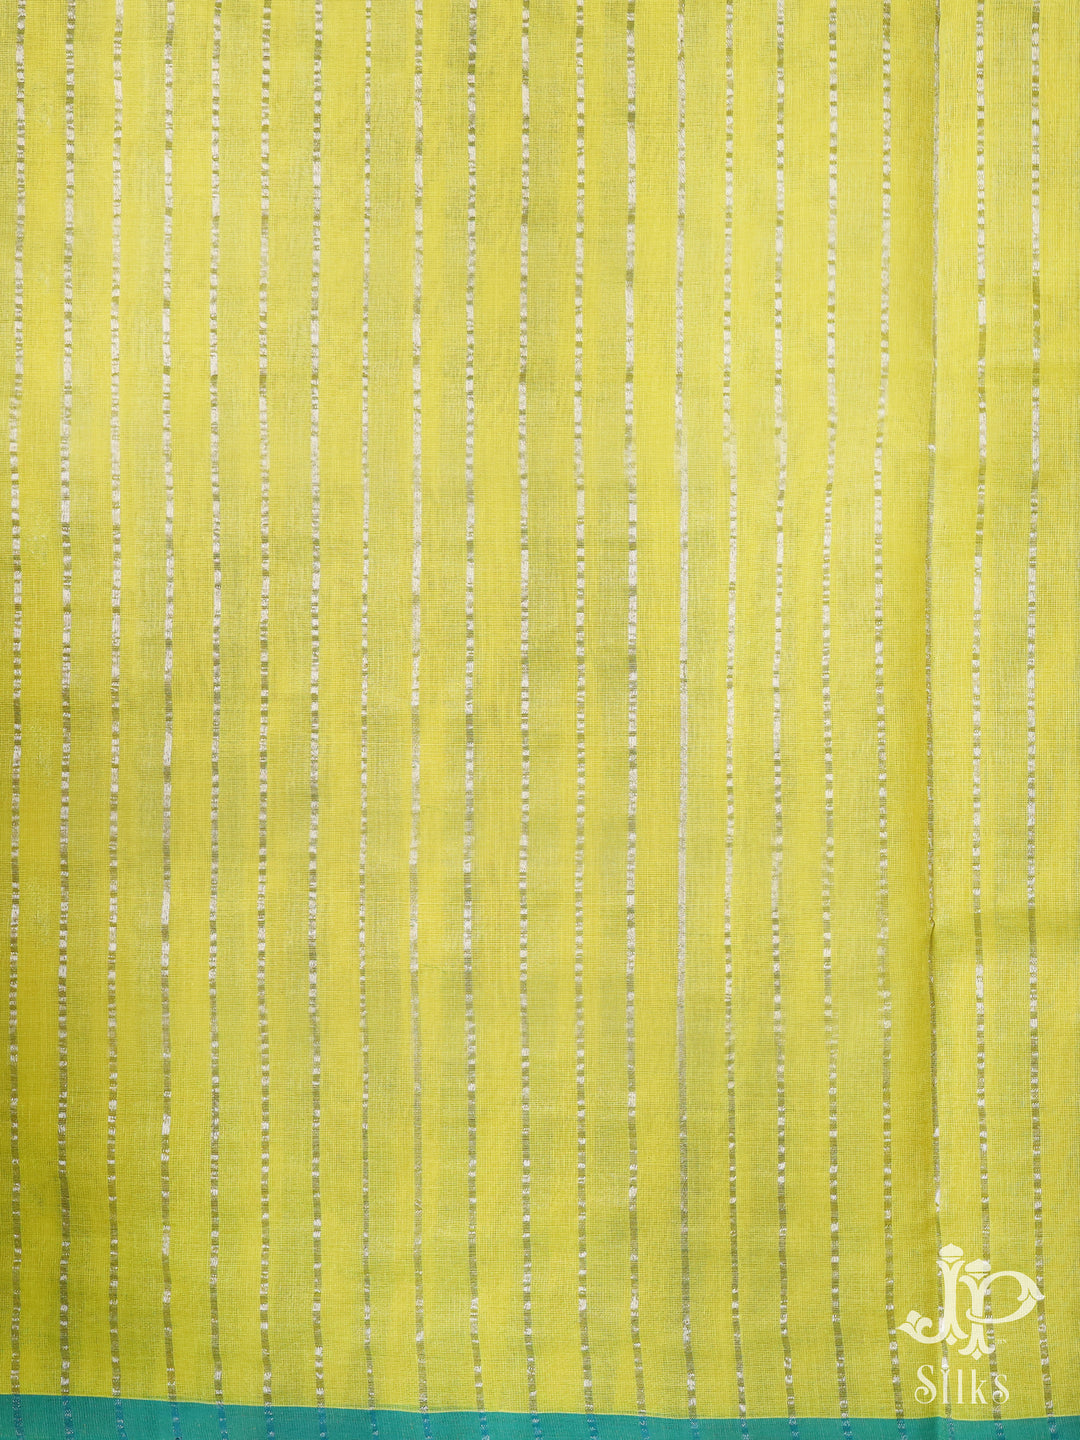 Lemon Yellow Venkatagiri Cotton Saree - D9810 -2